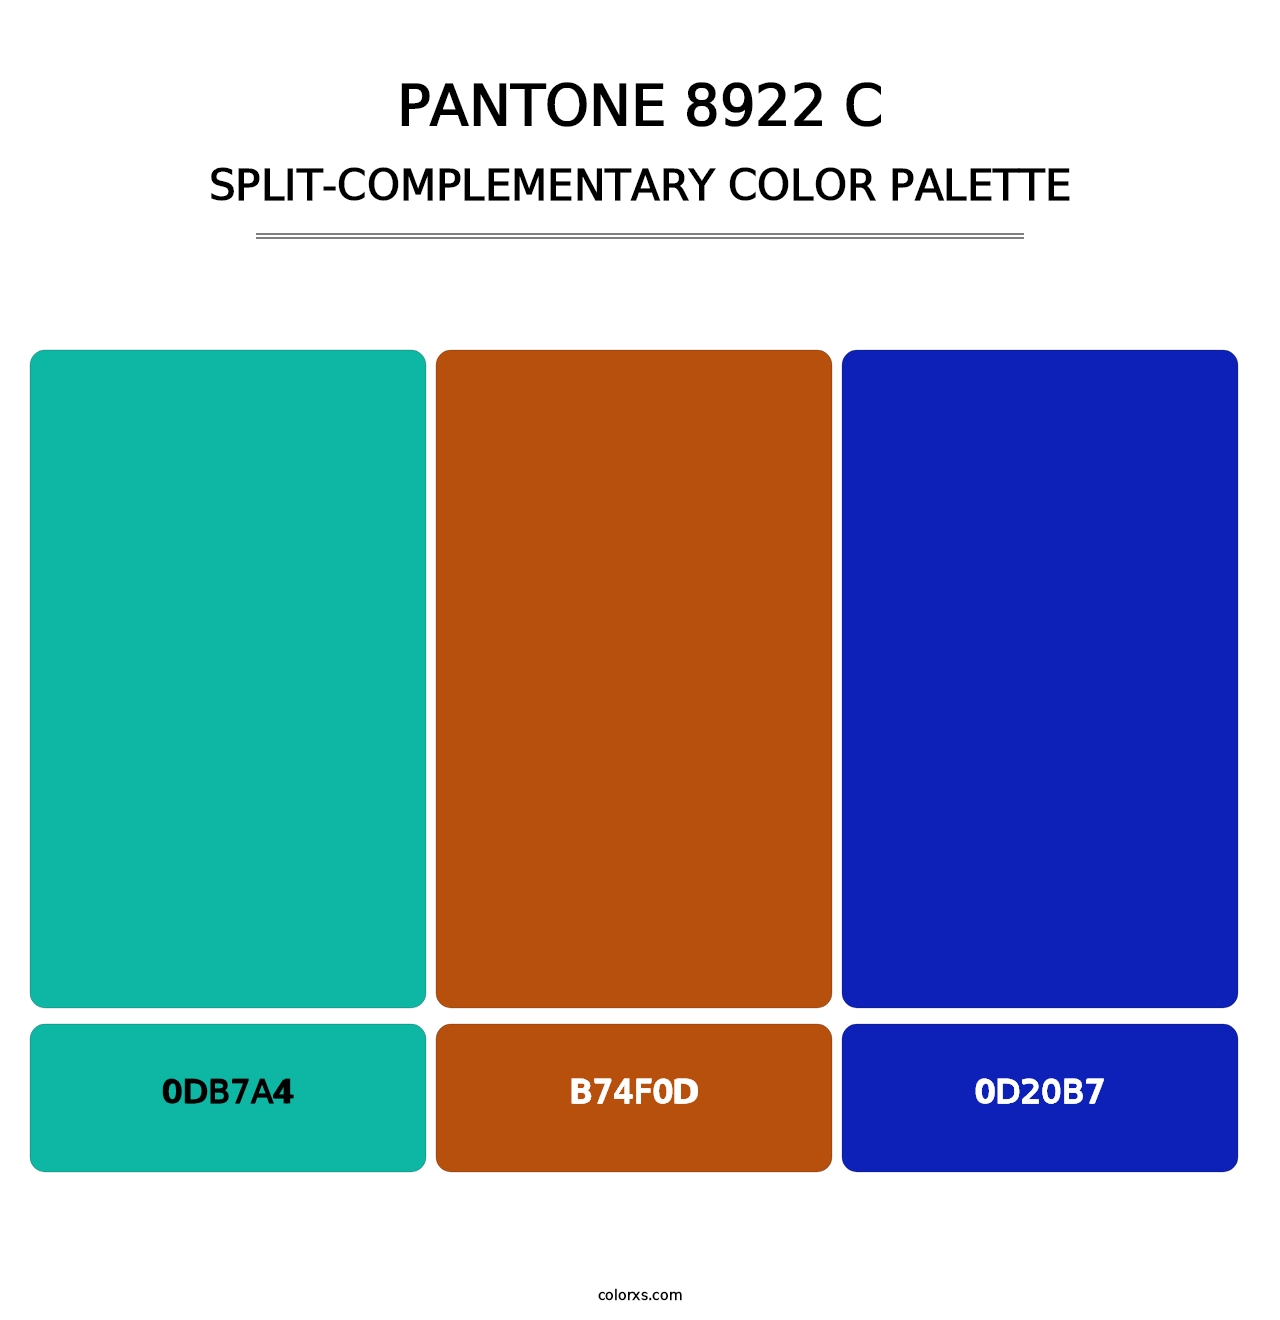 PANTONE 8922 C - Split-Complementary Color Palette